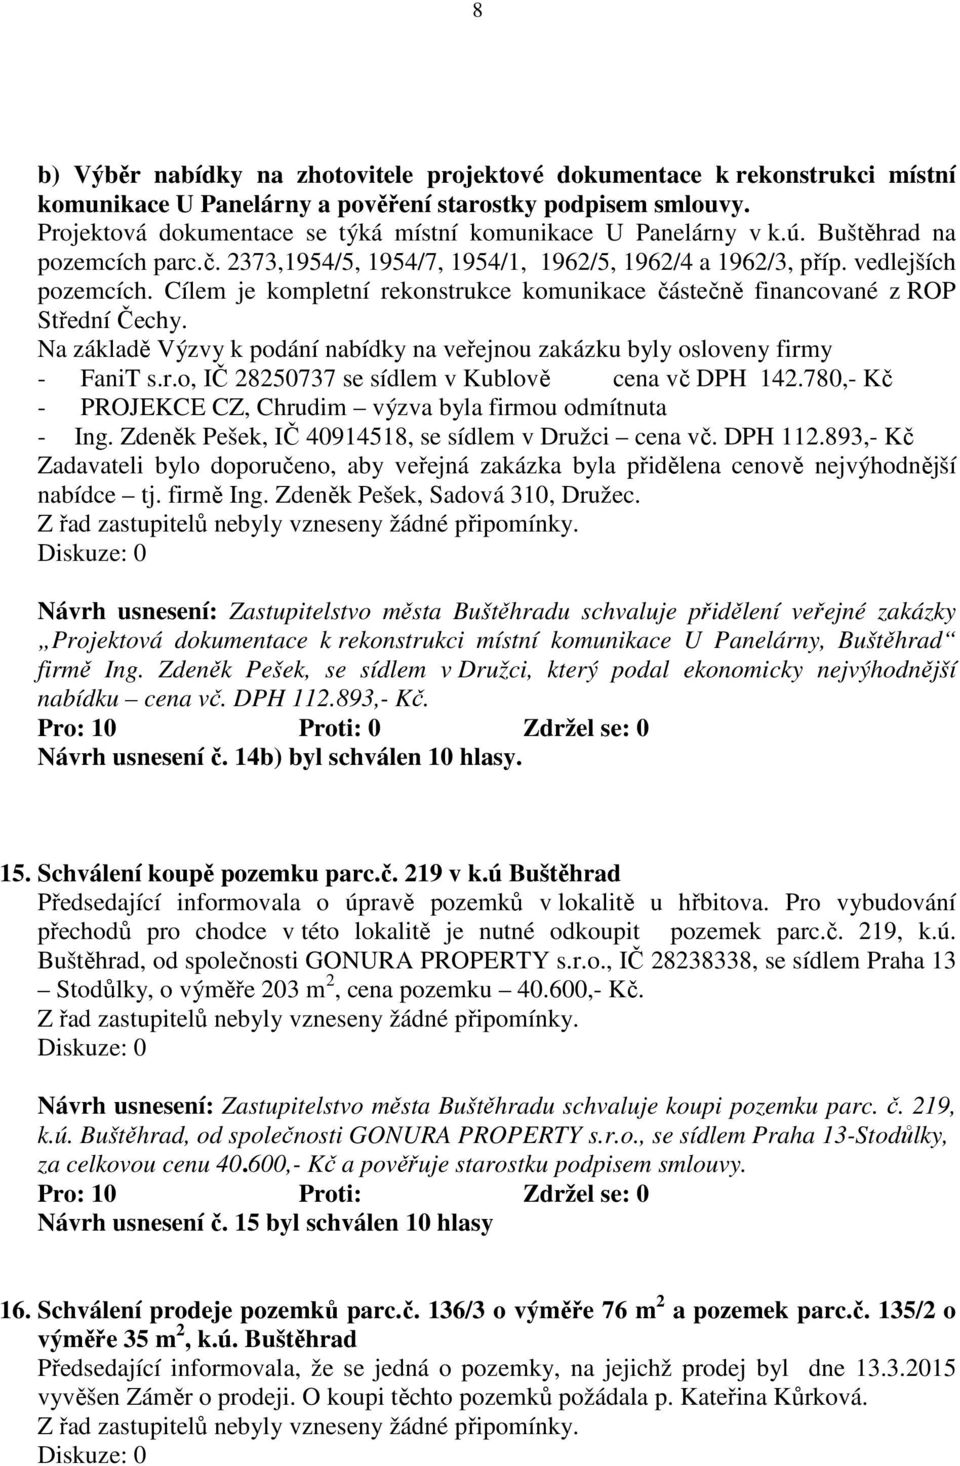 Cílem je kompletní rekonstrukce komunikace částečně financované z ROP Střední Čechy. Na základě Výzvy k podání nabídky na veřejnou zakázku byly osloveny firmy - FaniT s.r.o, IČ 28250737 se sídlem v Kublově cena vč DPH 142.